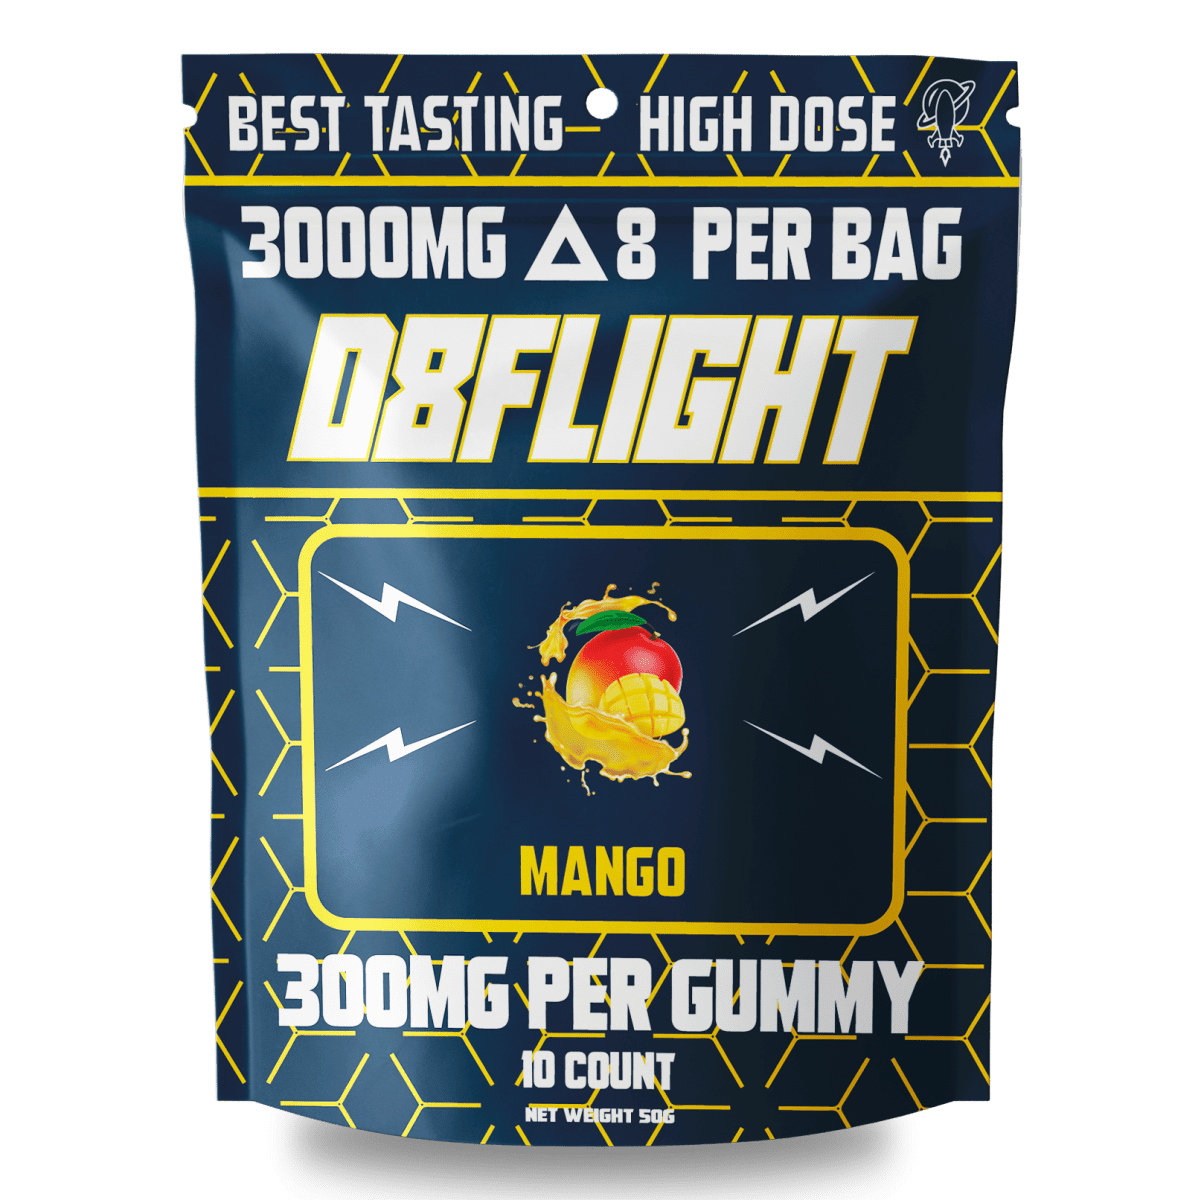 High dose 3000mg d8 gummies mango